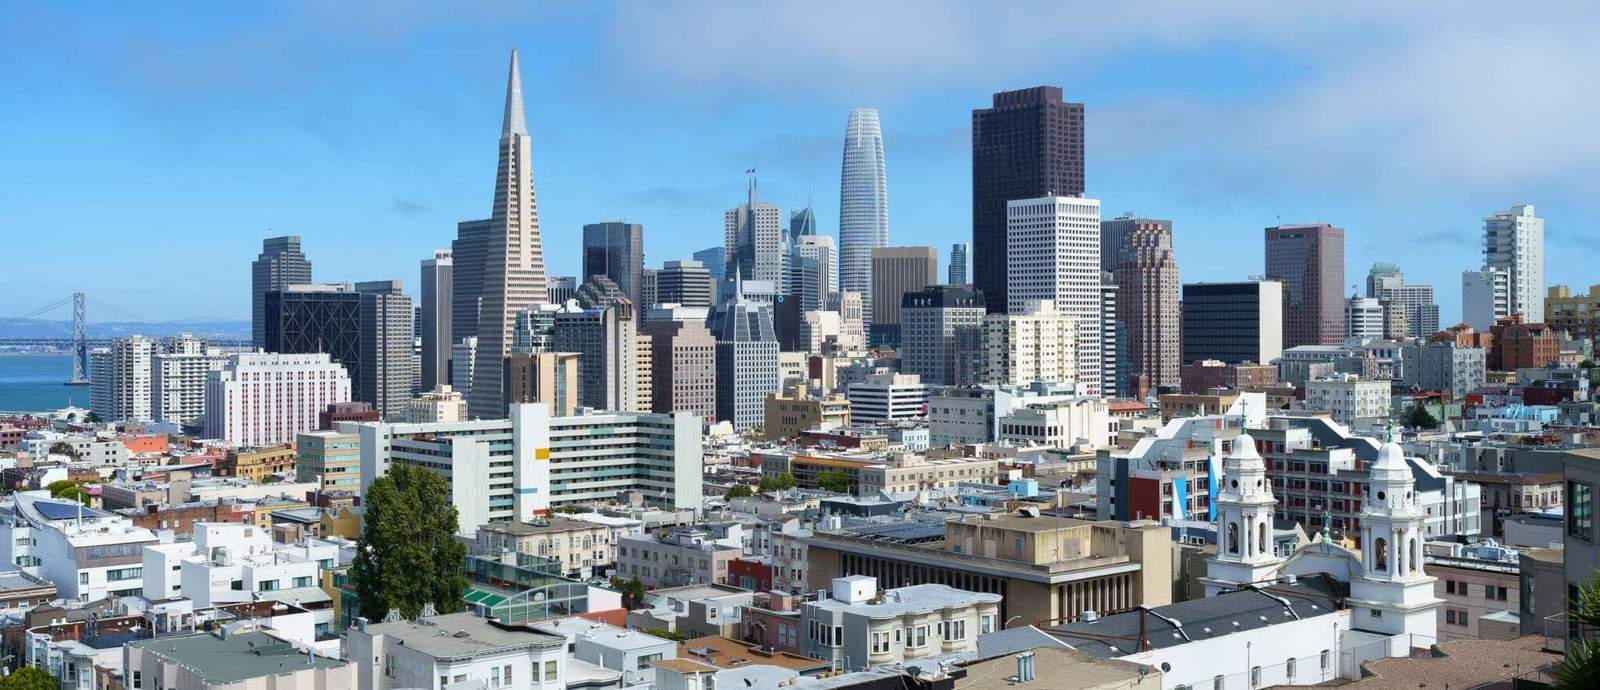 ينطلق مؤتمر AIA on Architecture 2023 في سان فرانسيسكو في 7 يونيو